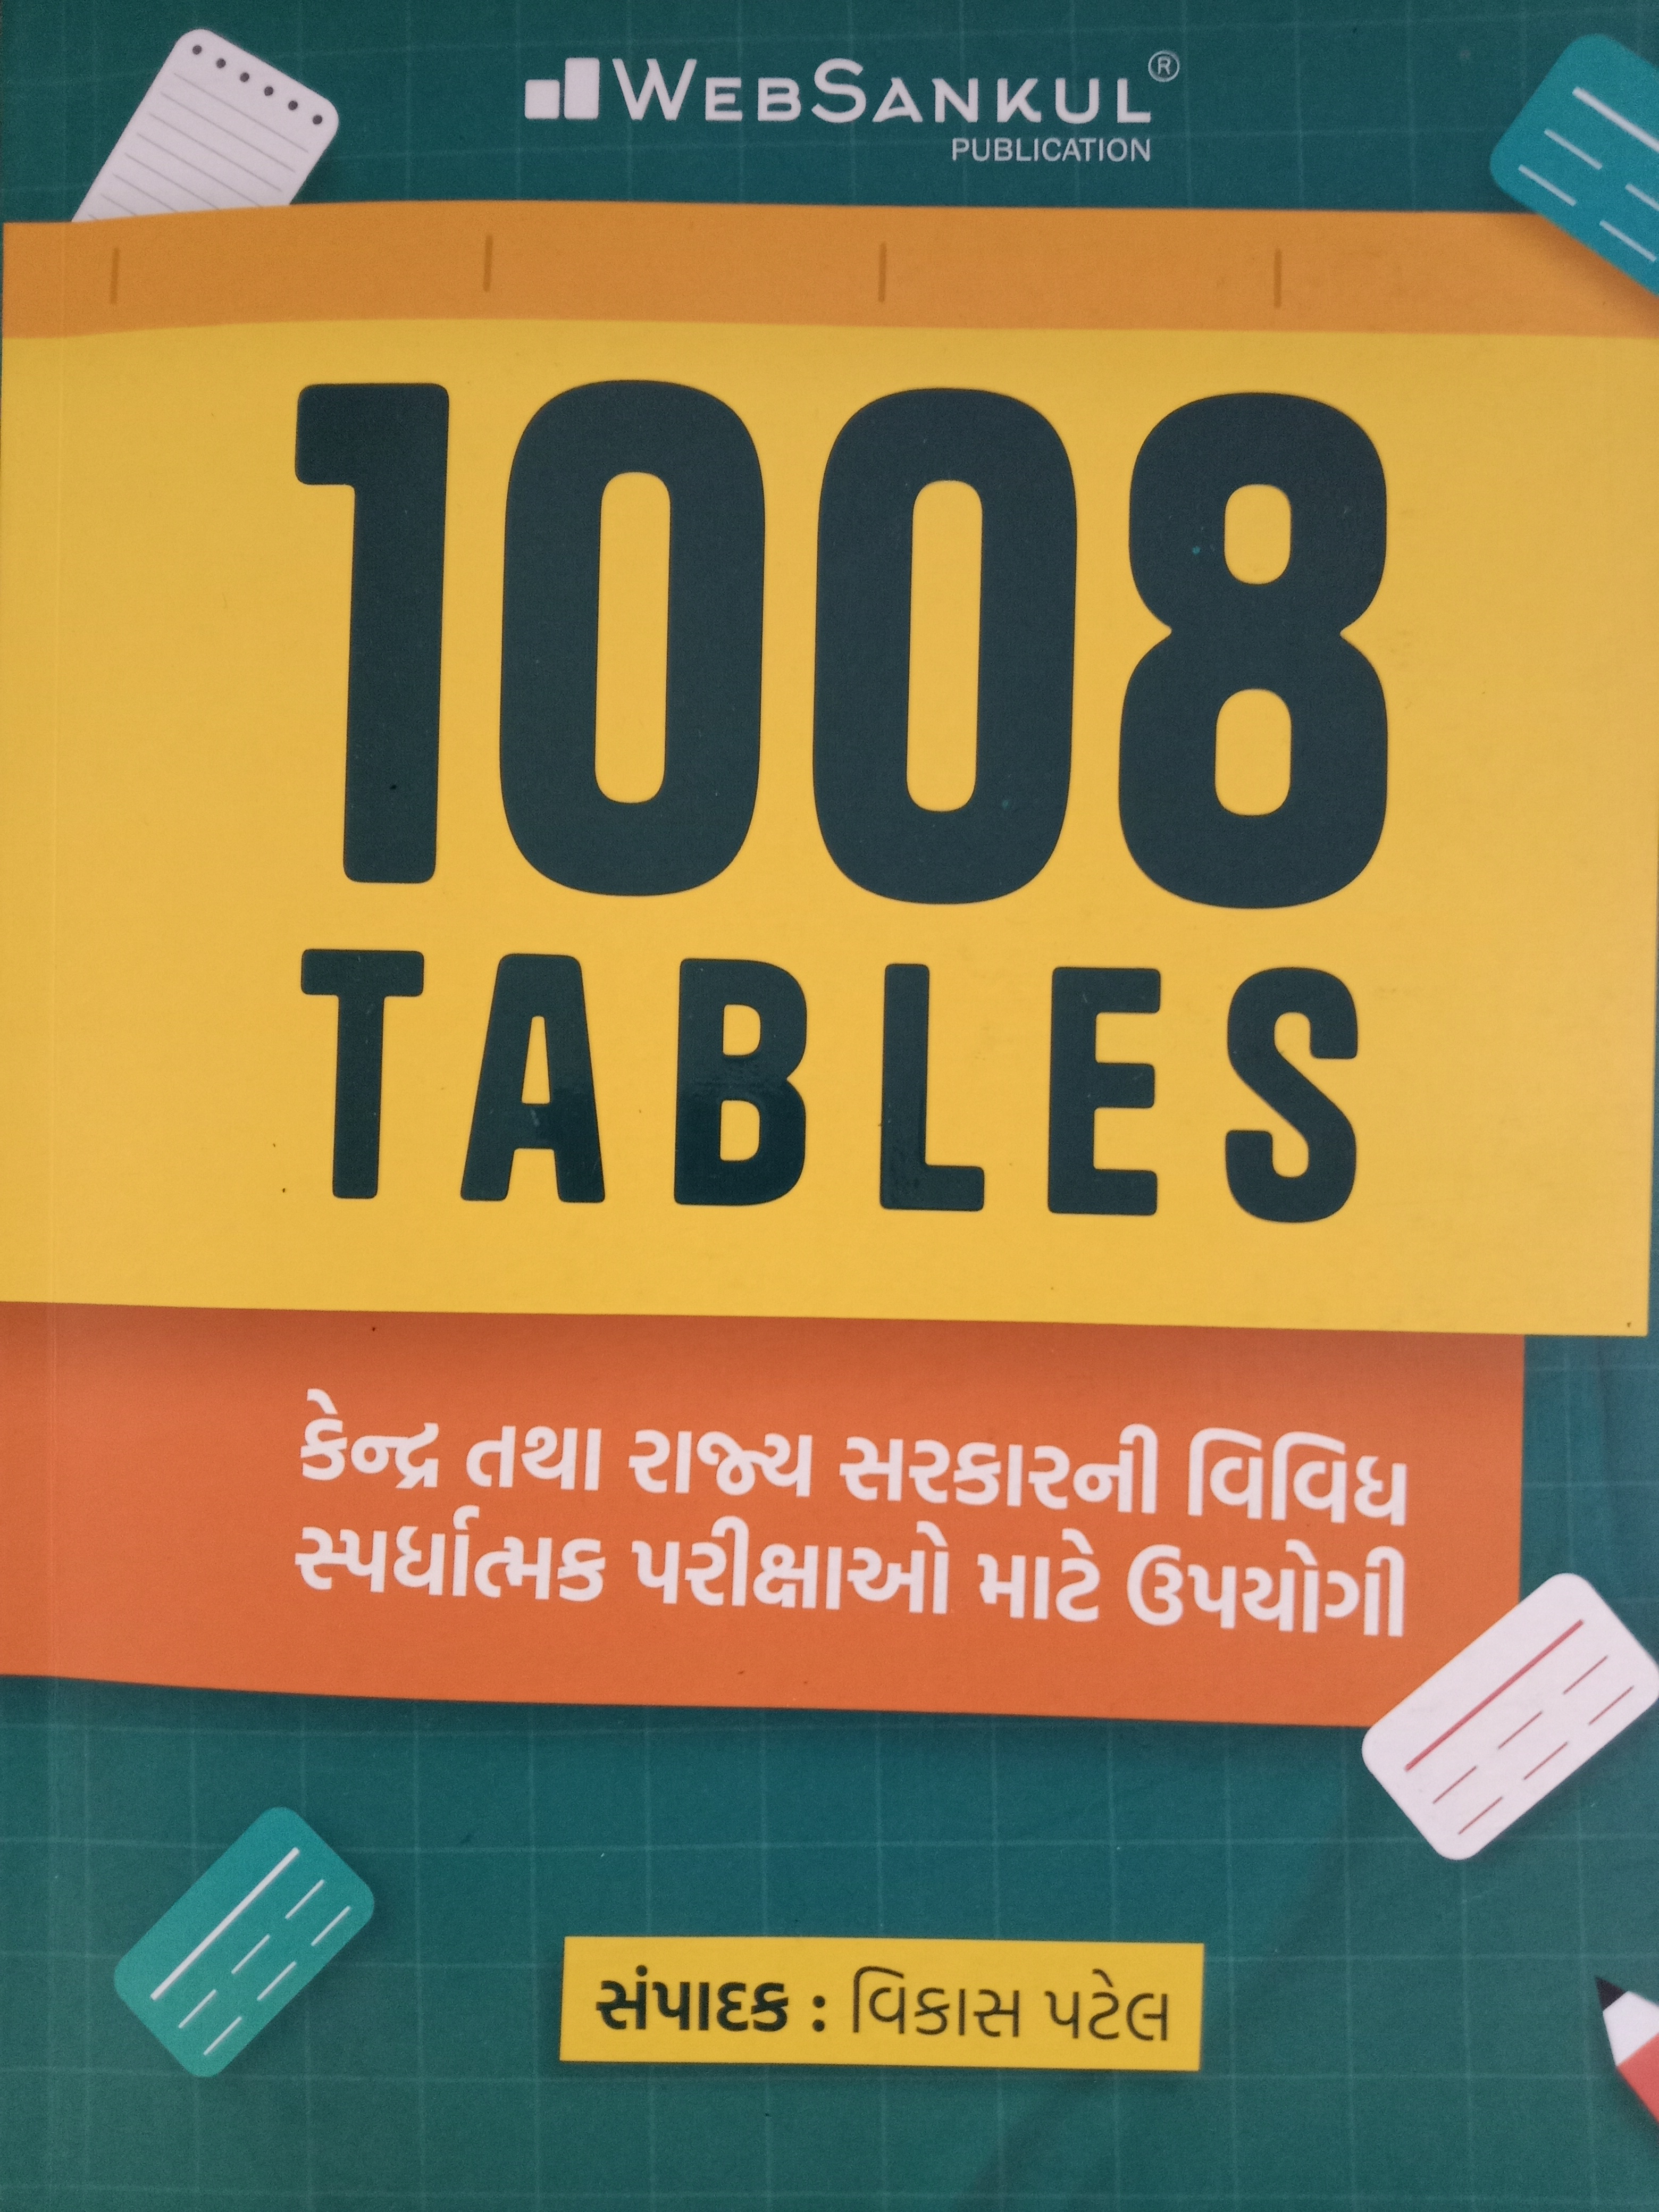 1008 Tables Websankul-2023